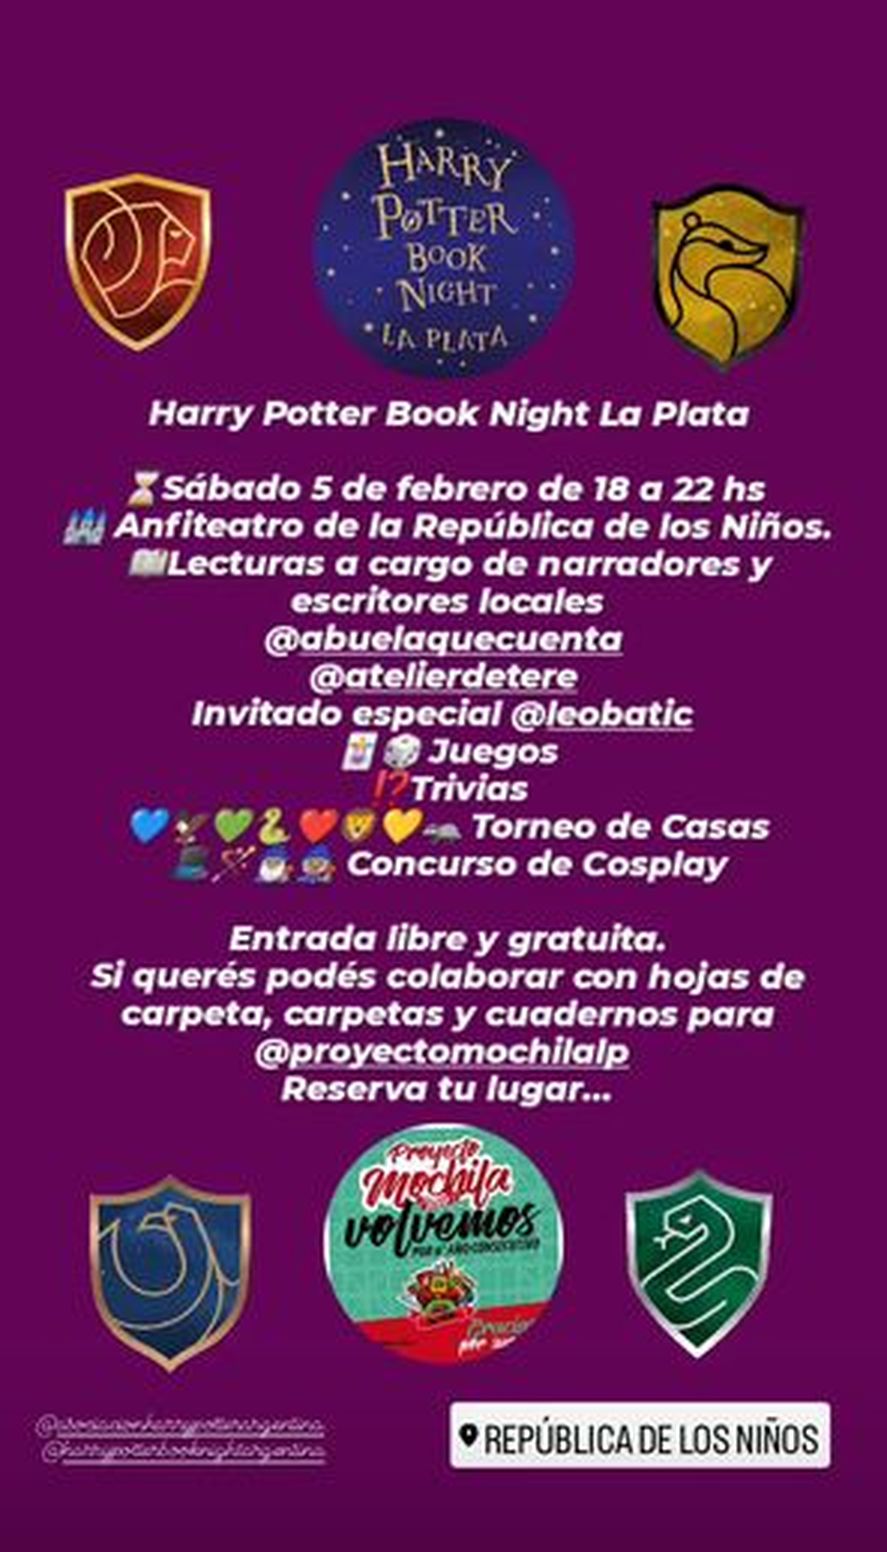 "Harry Potter Book Night": cómo es el evento que llega este sábado a la Repu